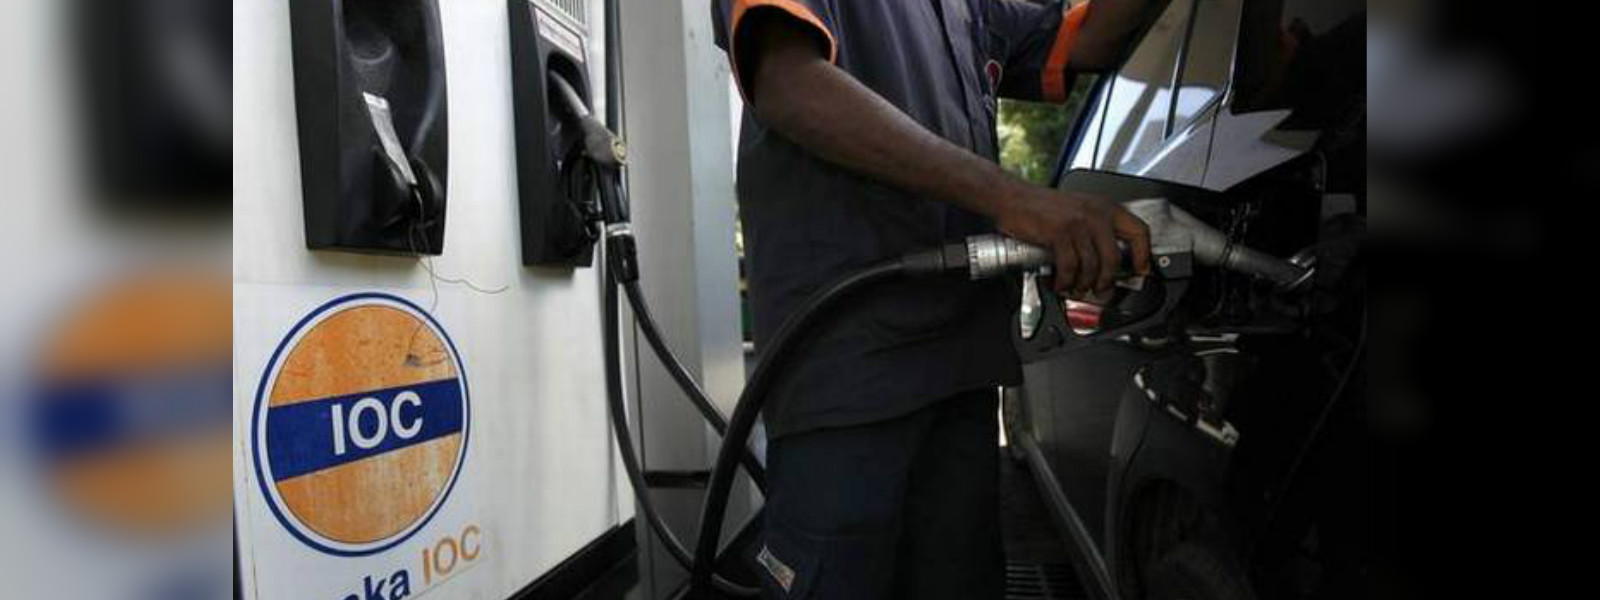 IOC fuel prices revised 